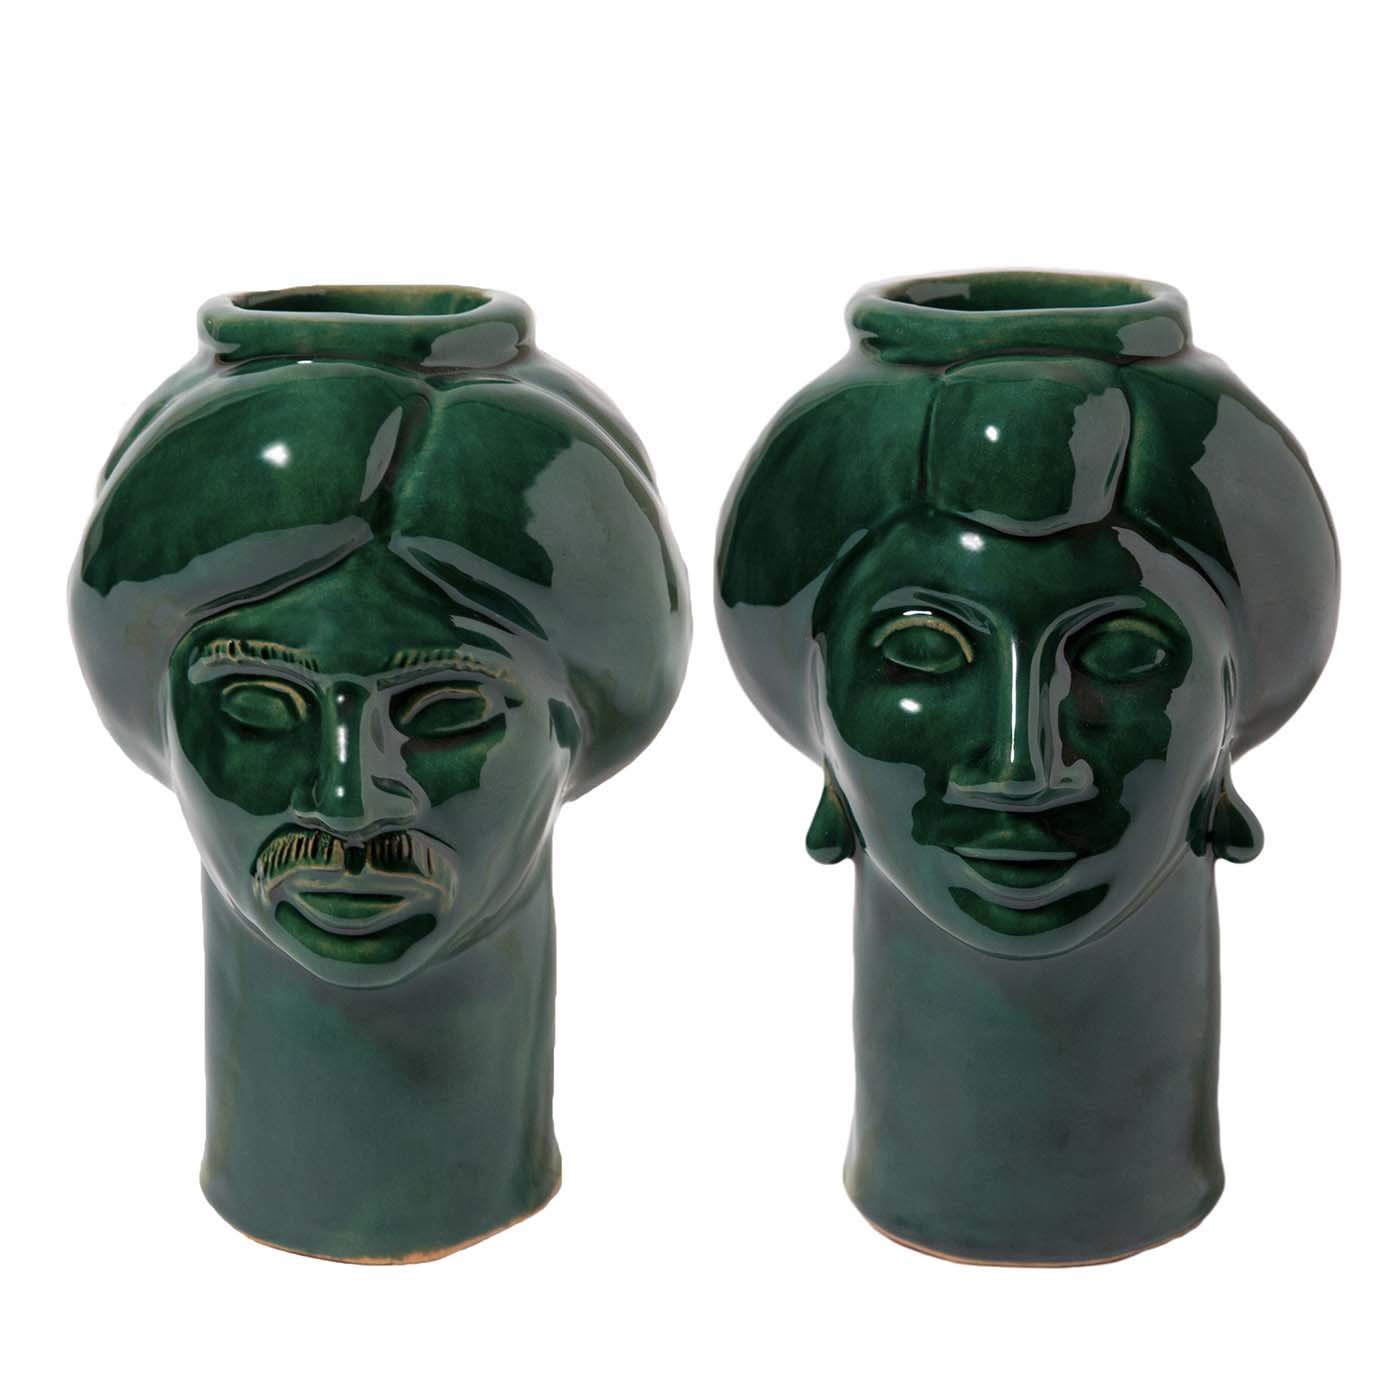 Solimano & Roxelana Dark Green Vases - Crita Ceramiche